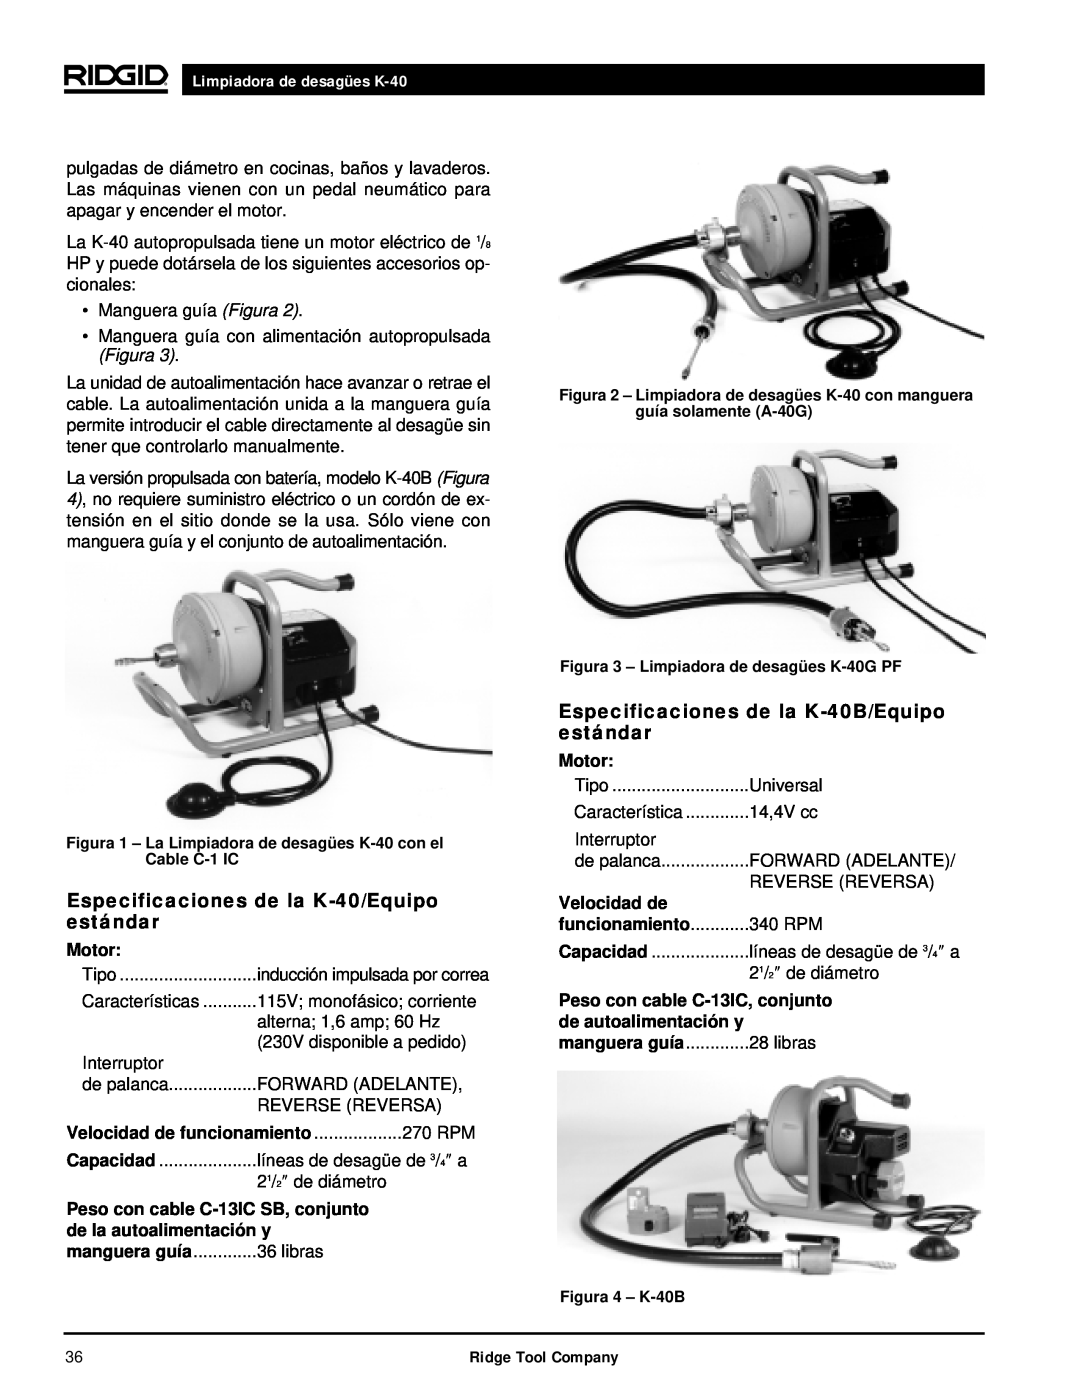 RIDGID K-40G PF manual Especificaciones de la K-40/Equipoestándar, Especificaciones de la K-40B/Equipoestándar, Motor 